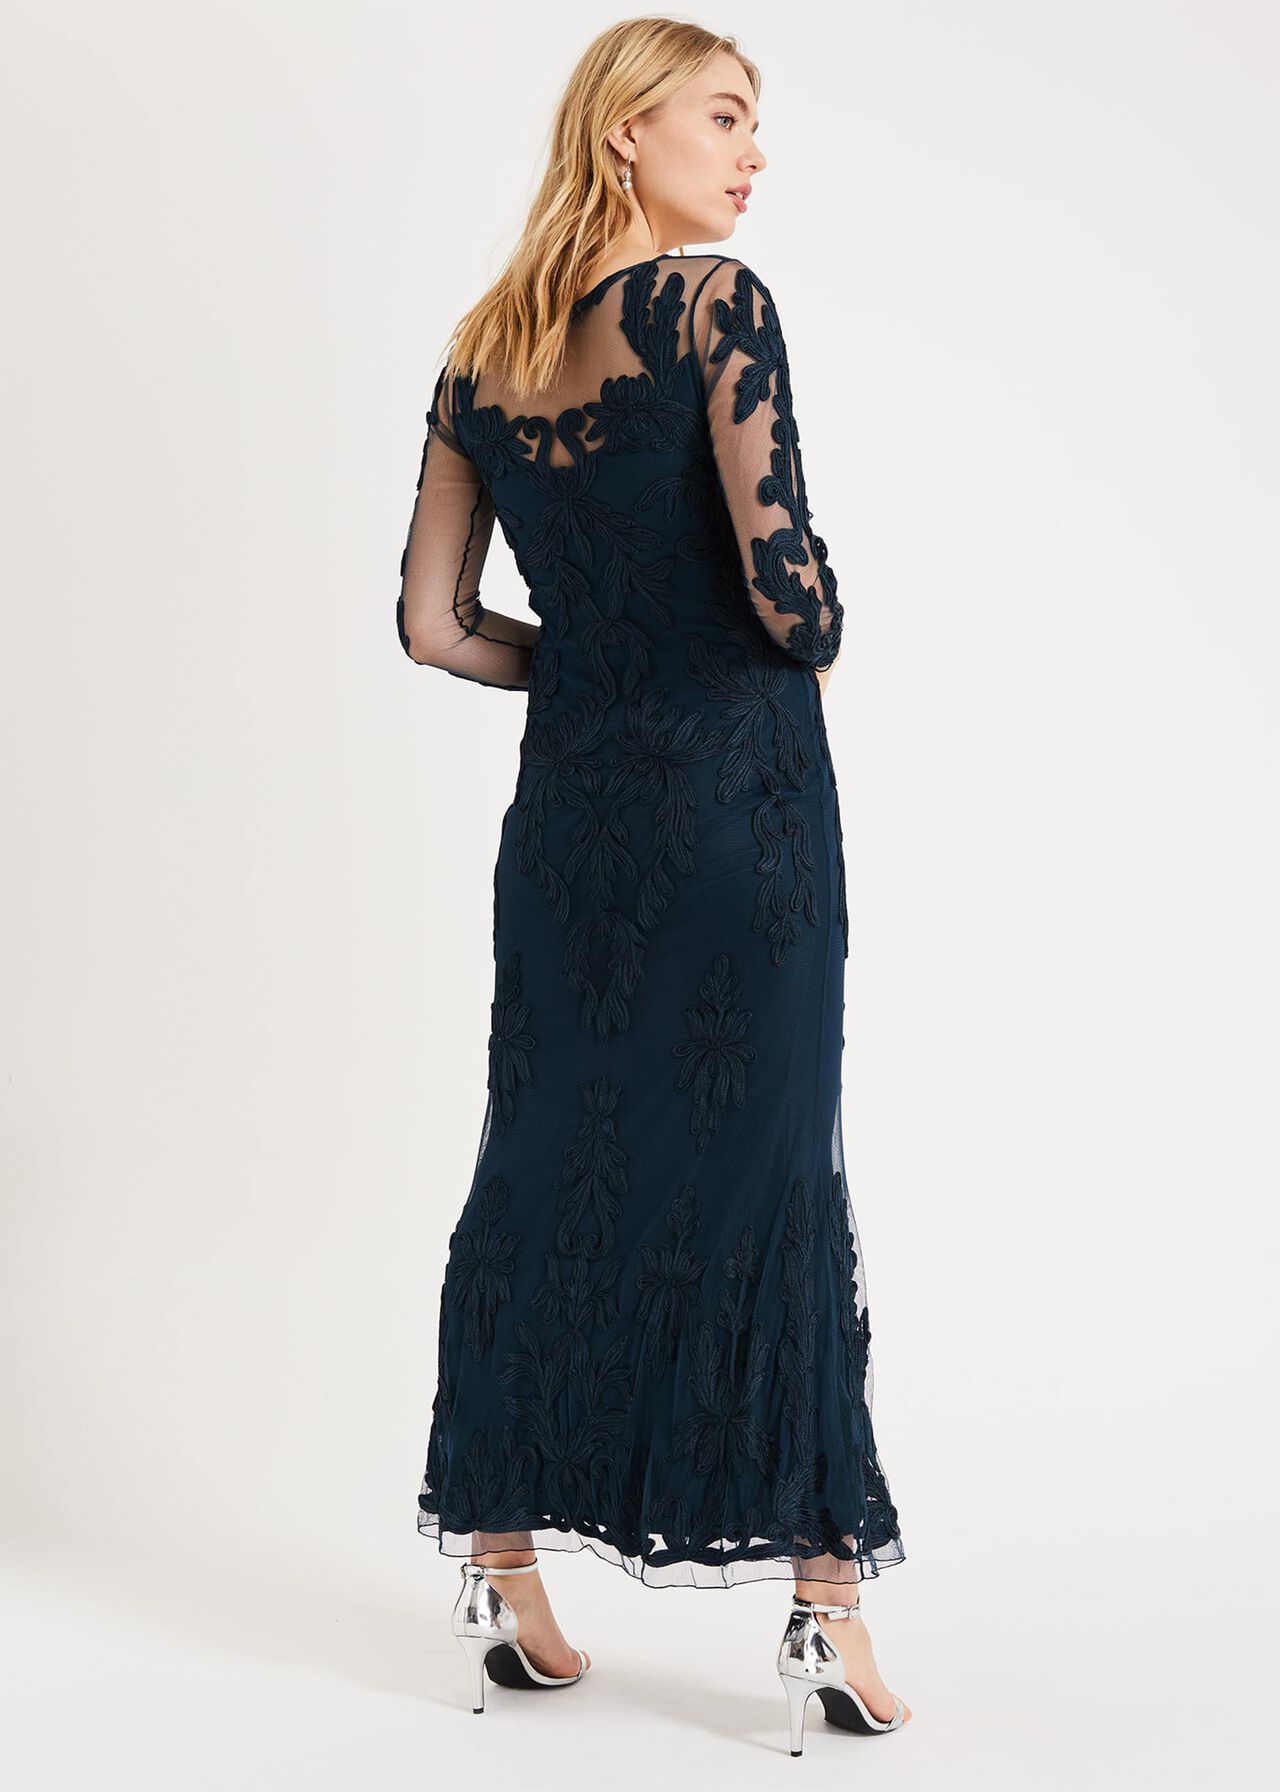 Leticia Tapework Lace Maxi Dress